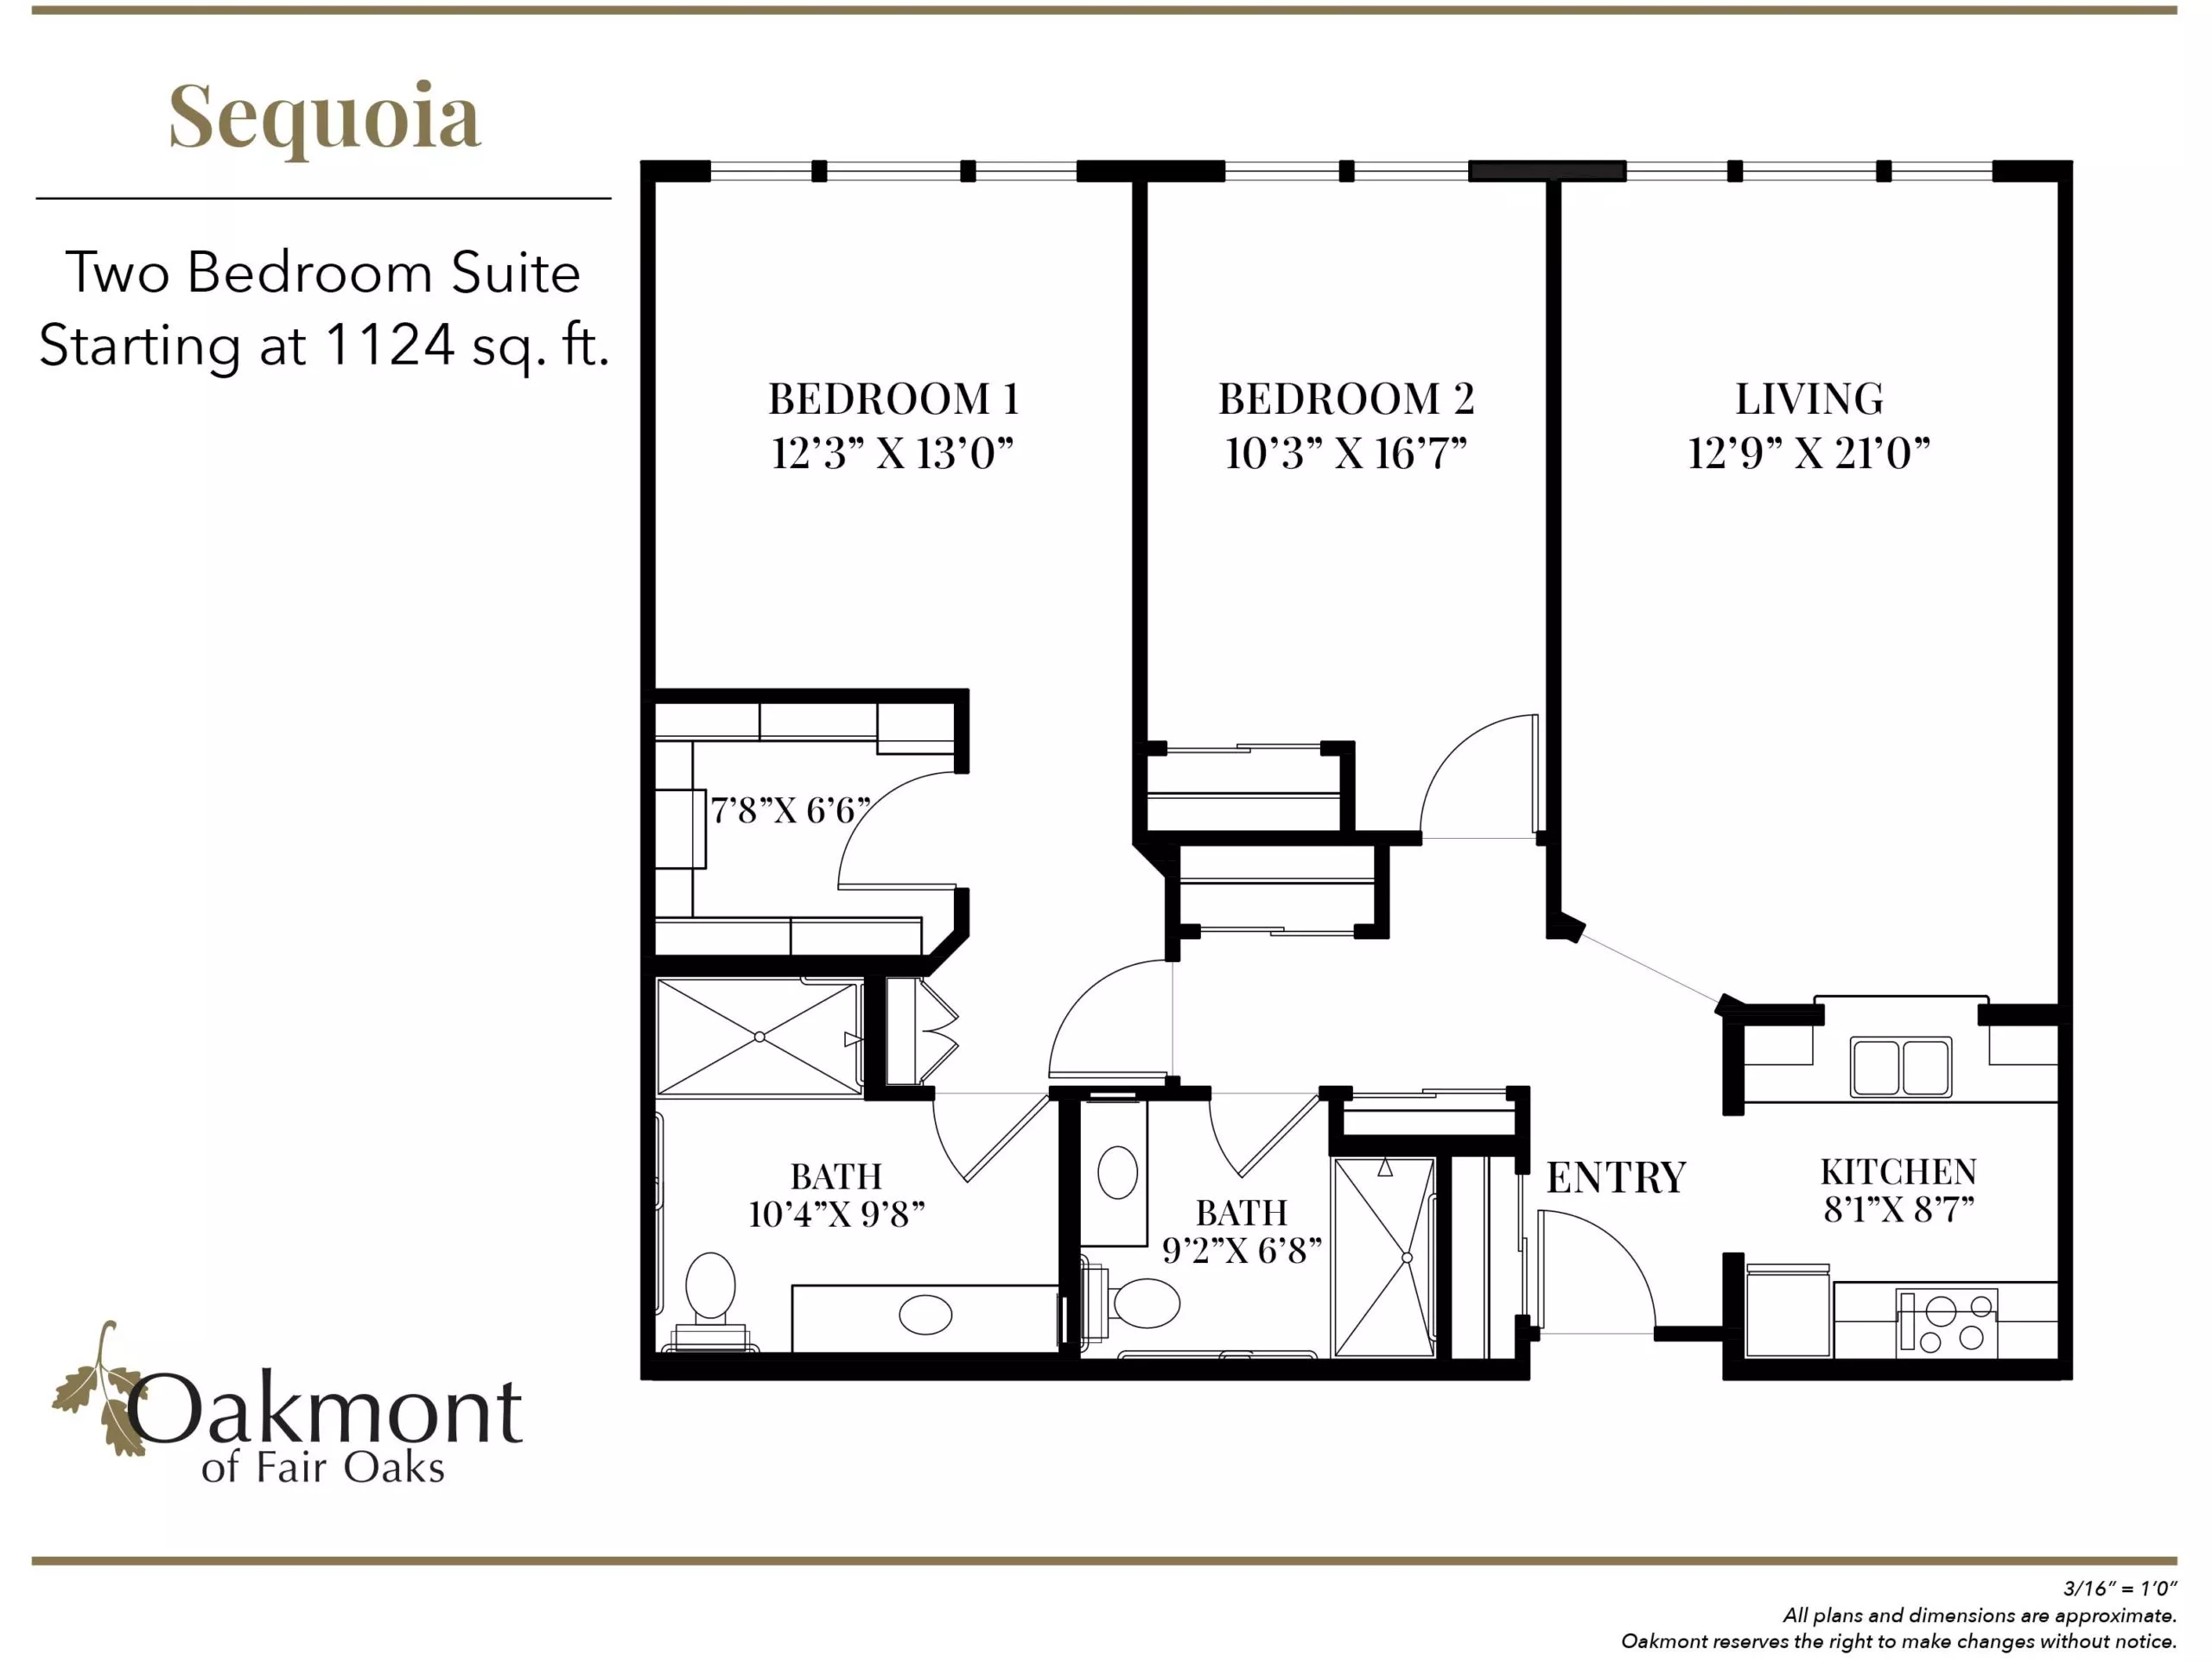 Sequoia two bedroom suite